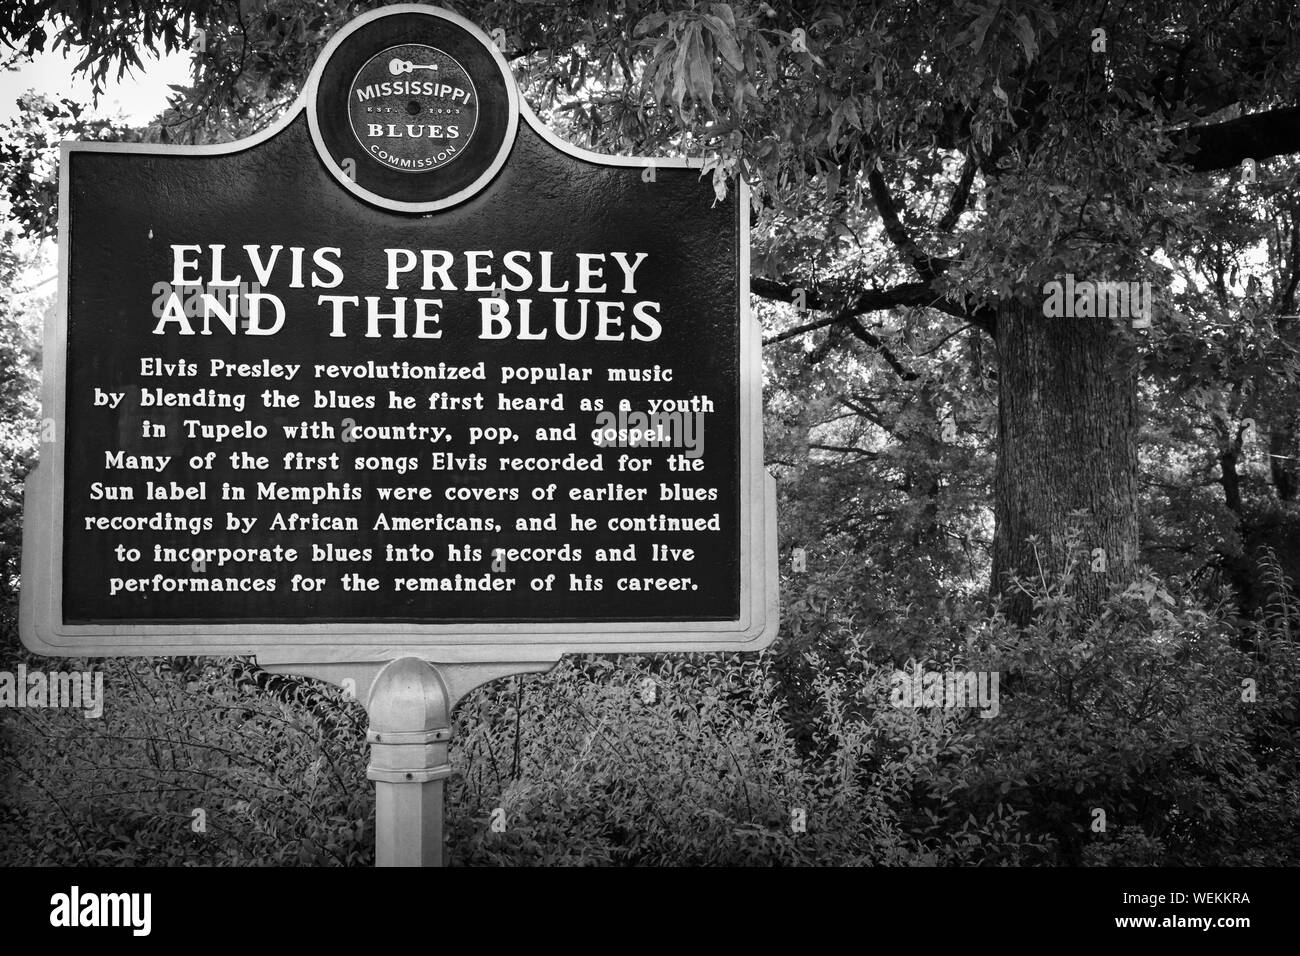 La Mississippi Blues Commission repère historique pour Elvis Presley et les bleus, sur le terrain du musée, lieu de naissance d'Elvis Presley Tupelo, MS Banque D'Images